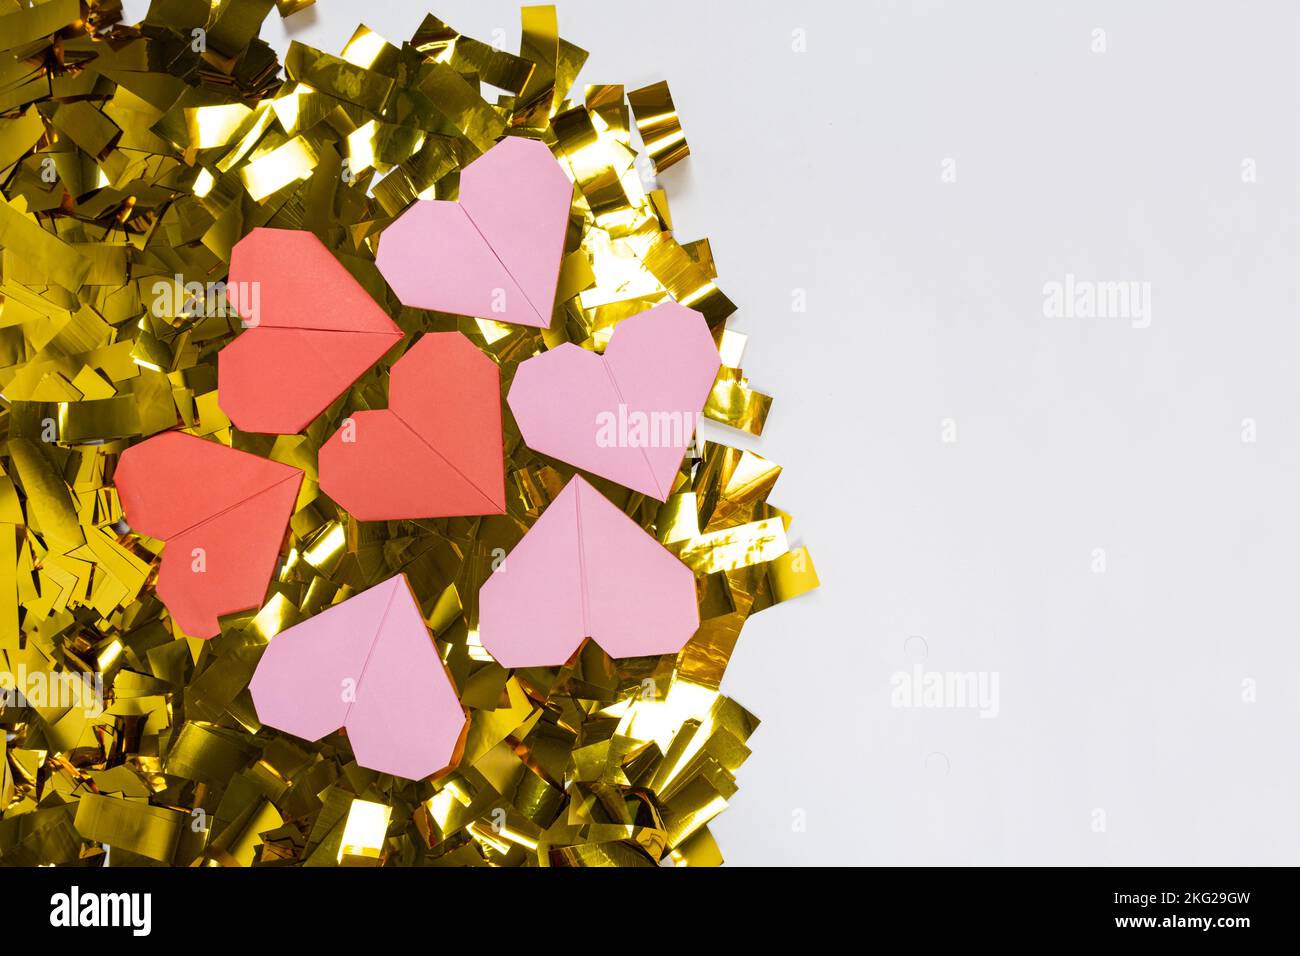 Origami per San Valentino - cuori fatti di carta, fai da te, banner con posto per il testo Foto Stock